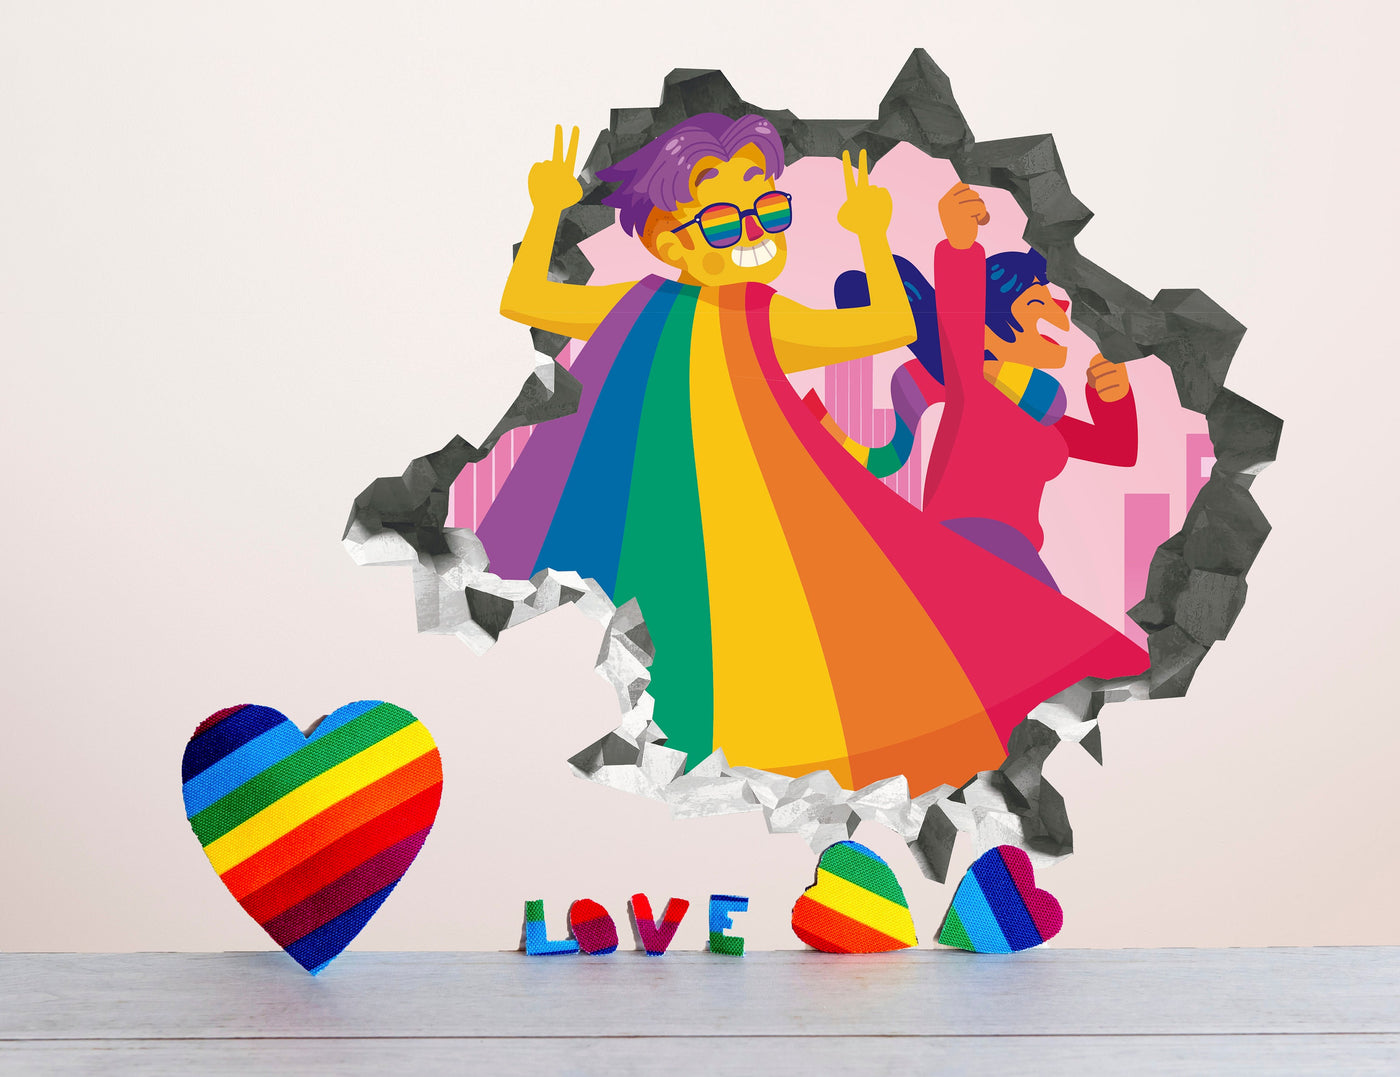 Decalque de parede da Marcha do Orgulho - Decoração de parede da parada LGBTQ + - Decalque Wallhole da Marcha do Amor - Decalque da Marcha do Orgulho - Igualdade